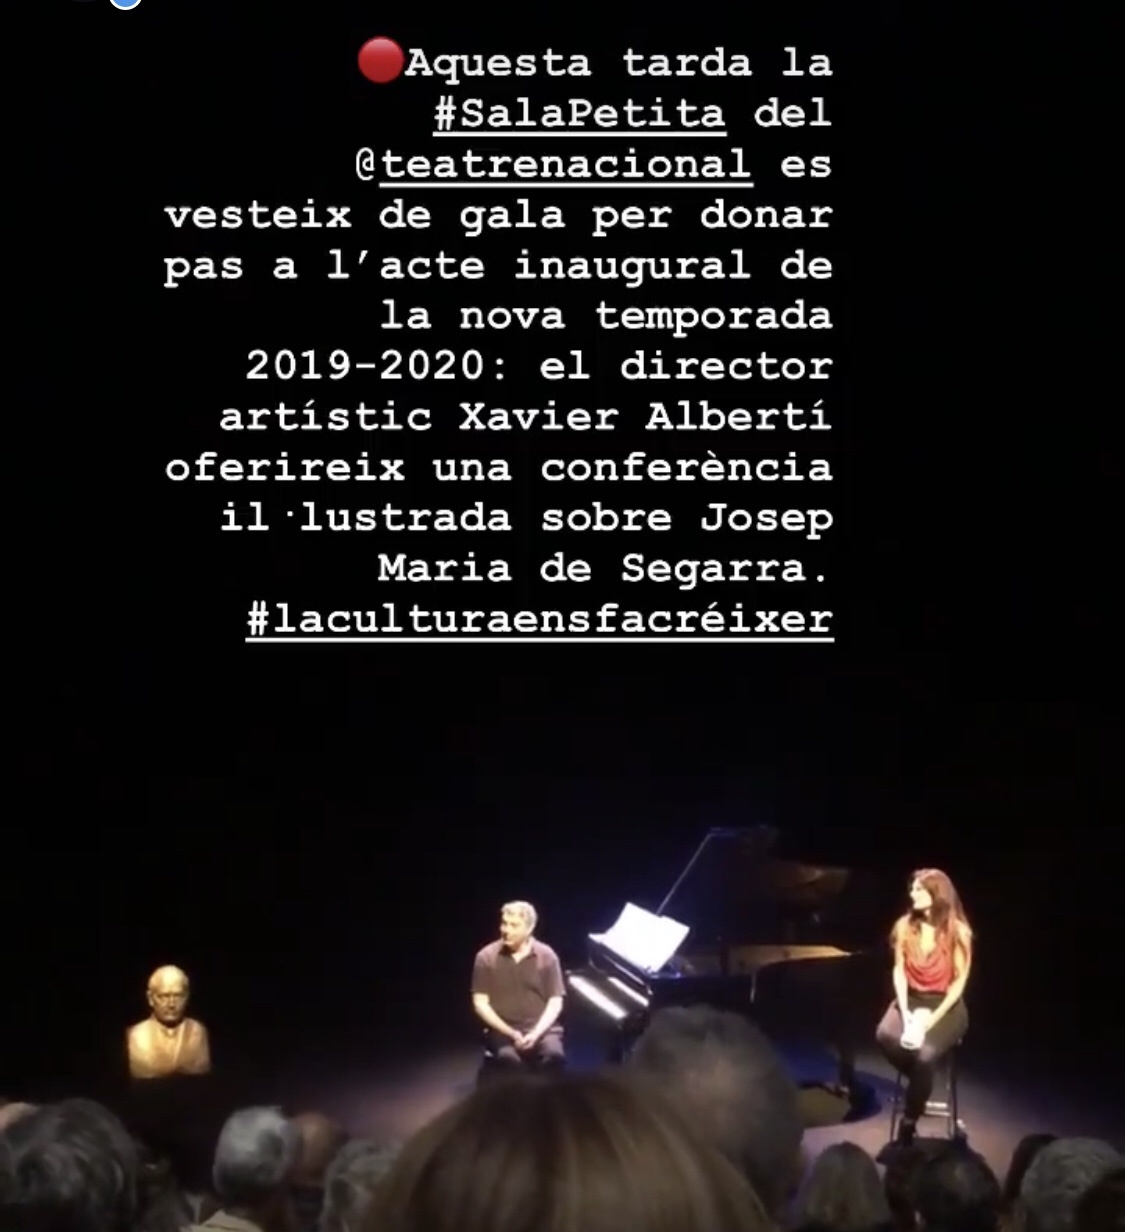 Així va ser la inauguració de la nova temporada 2019-2020 del Teatre Nacional